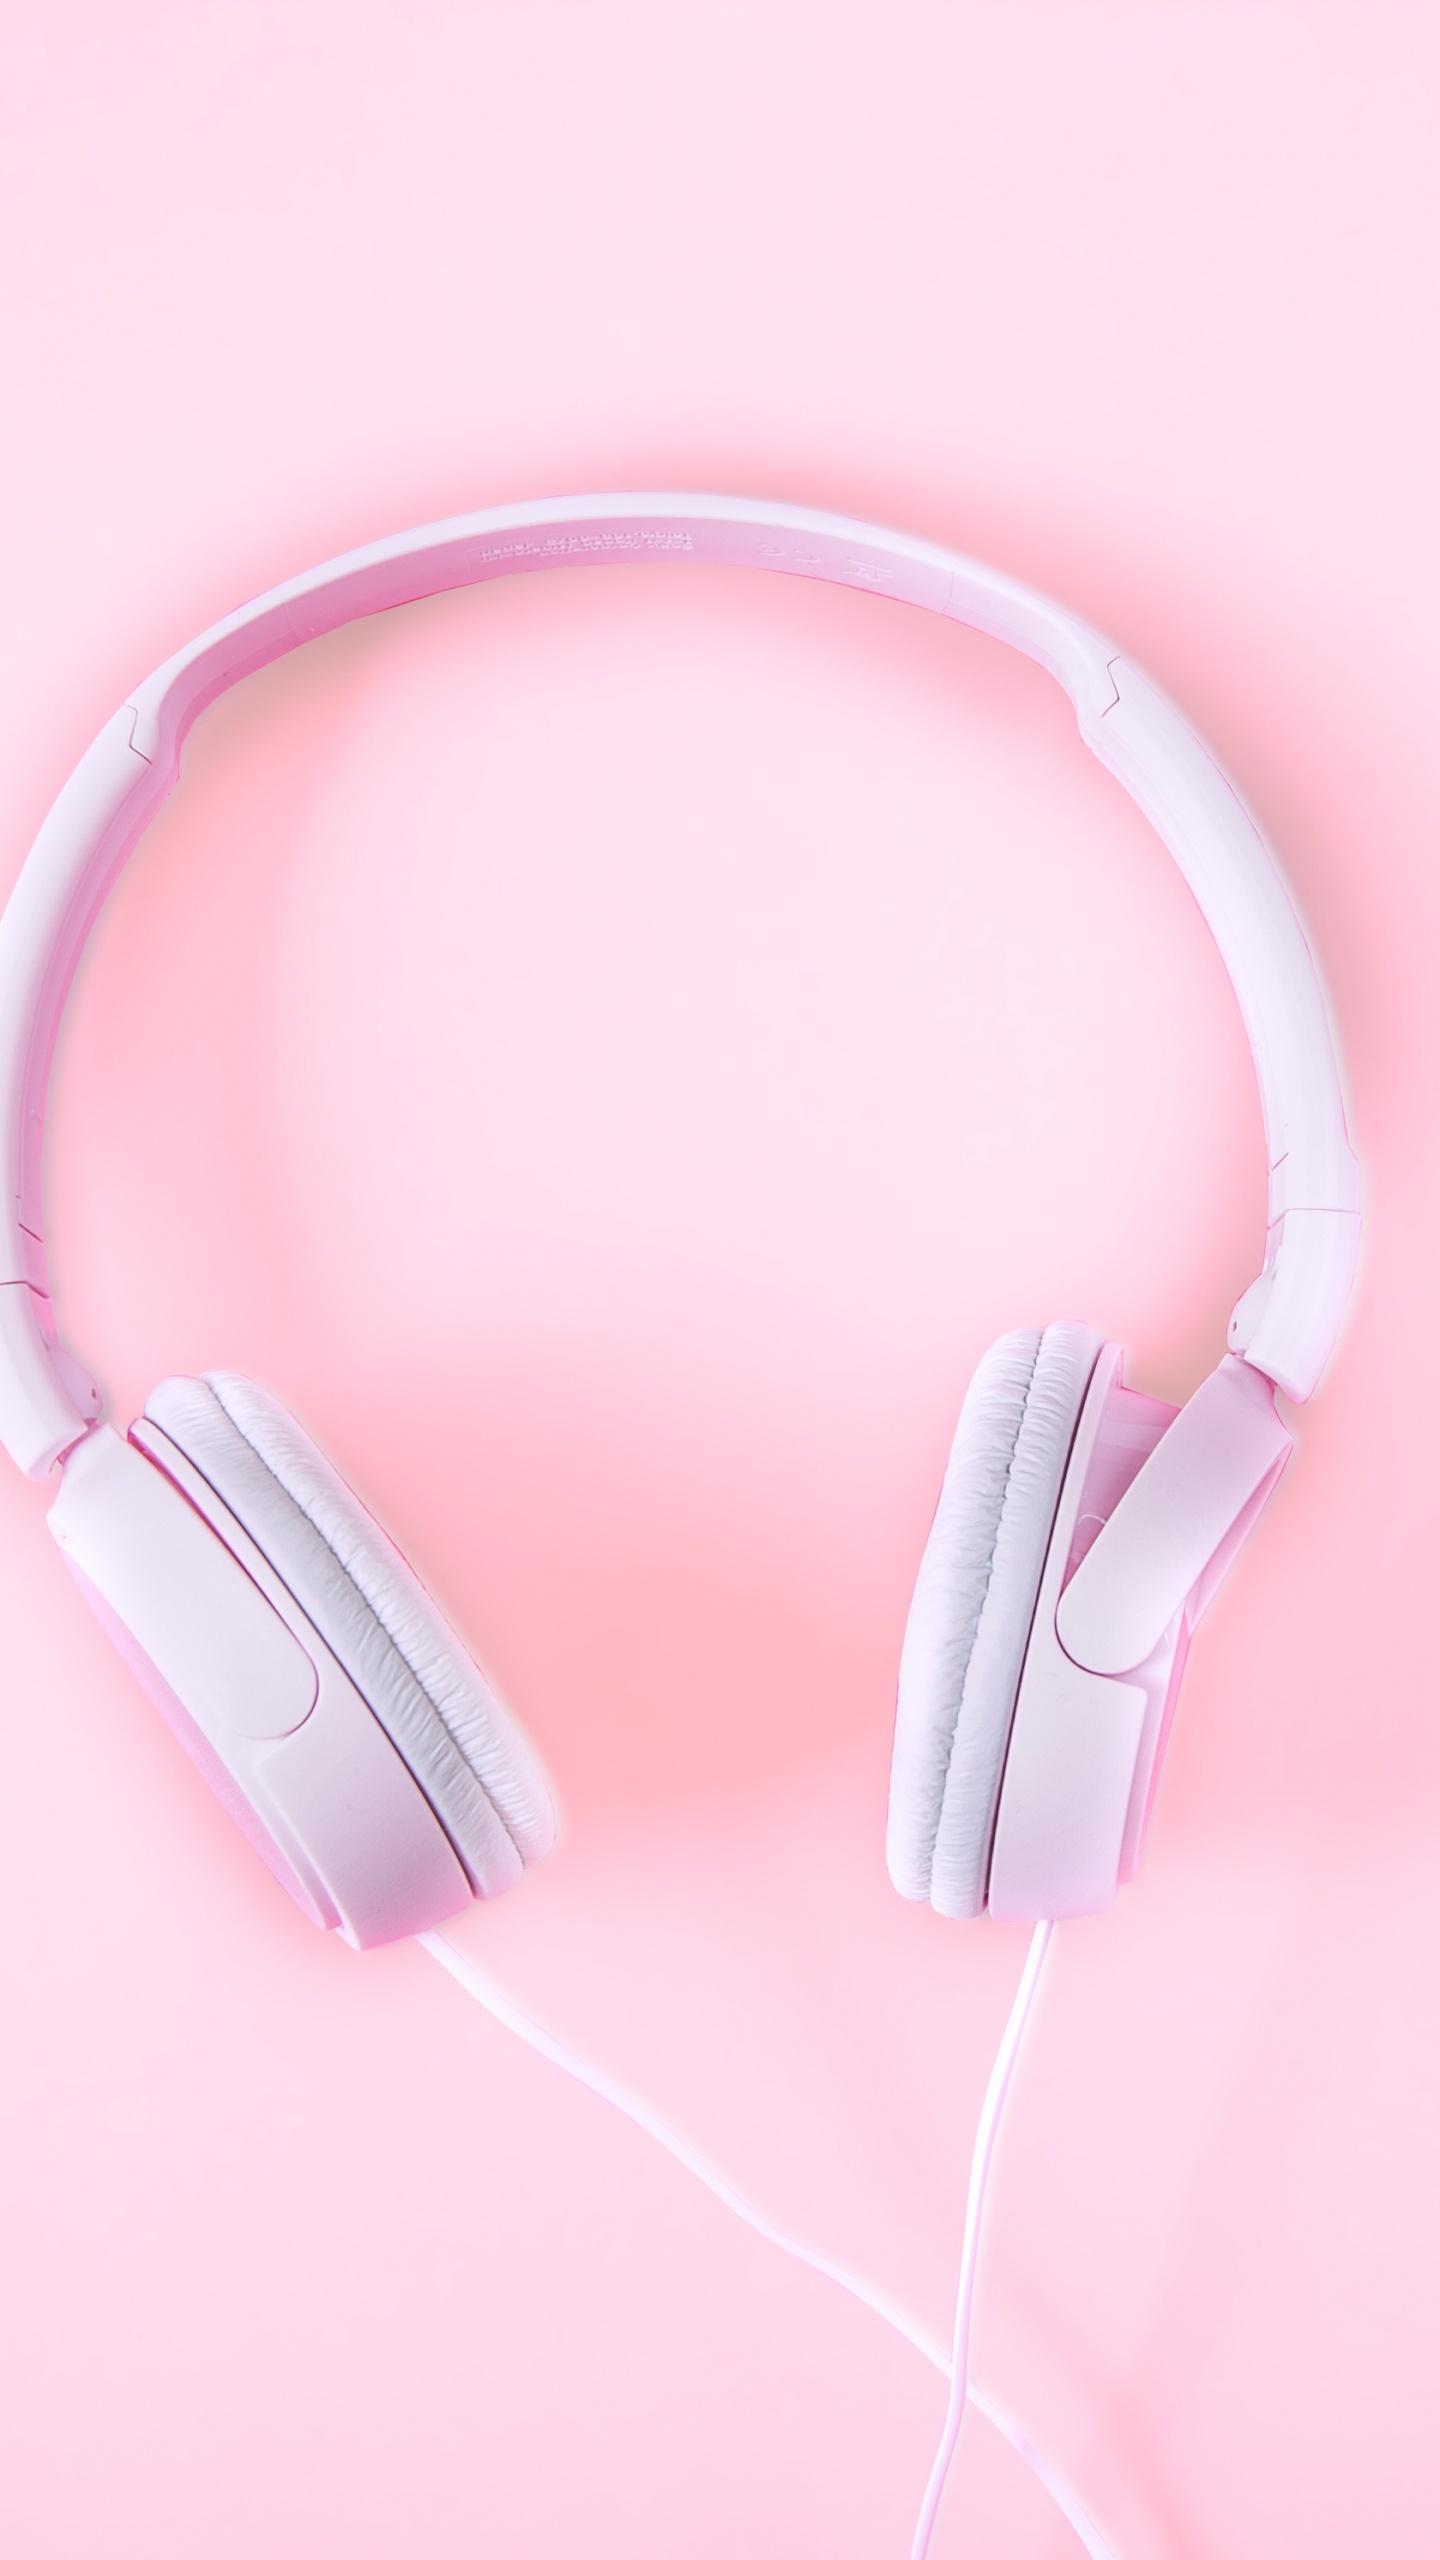 Kopfhörer, Pink, Audiogeräten, Gadget, Ohr. Wallpaper in 1440x2560 Resolution